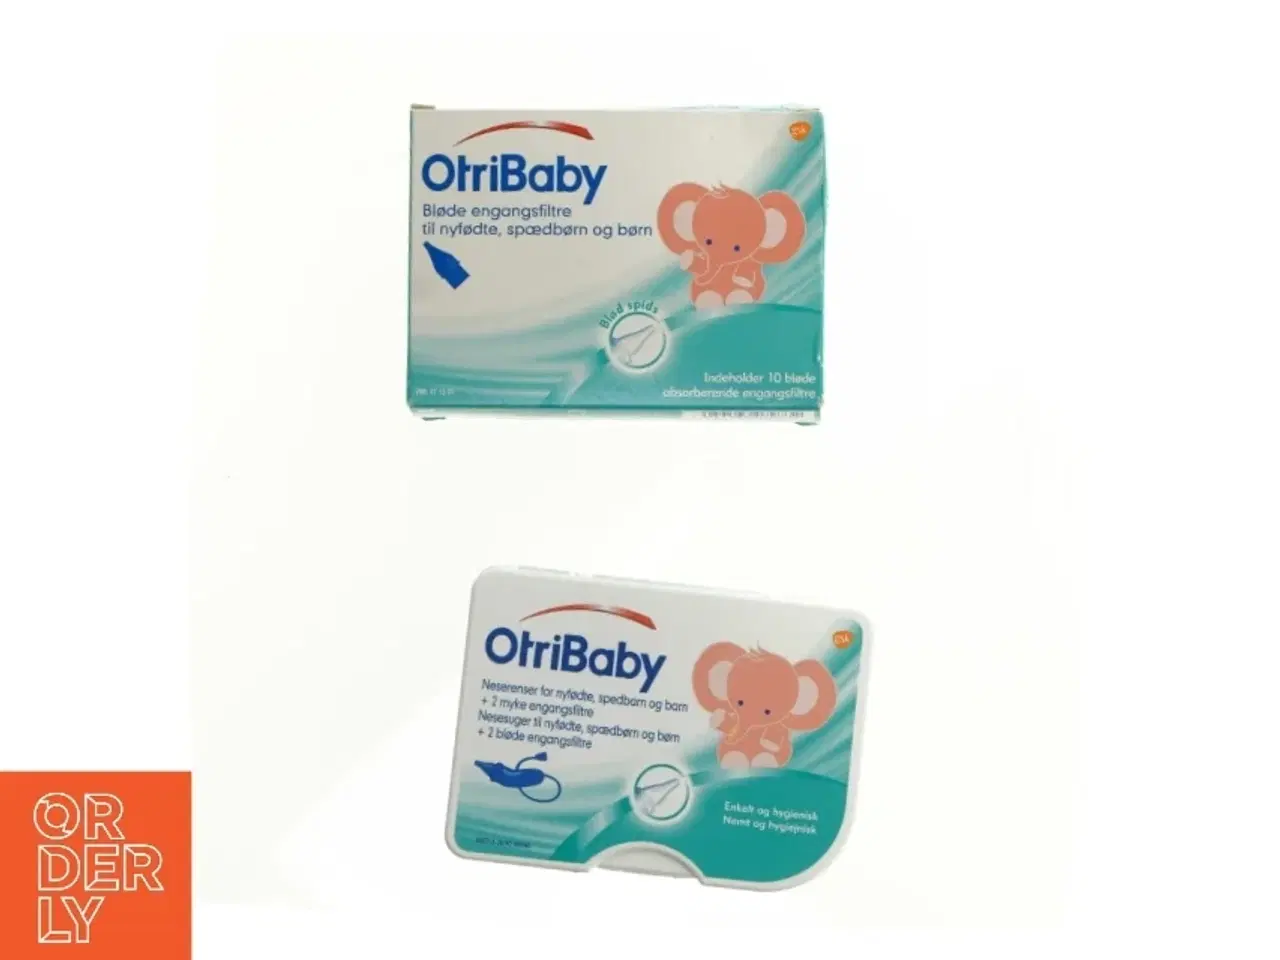 Billede 2 - Næse renser til baby fra Otribaby (str. 12 x 9 x 8 cm) samt engangsfiltre